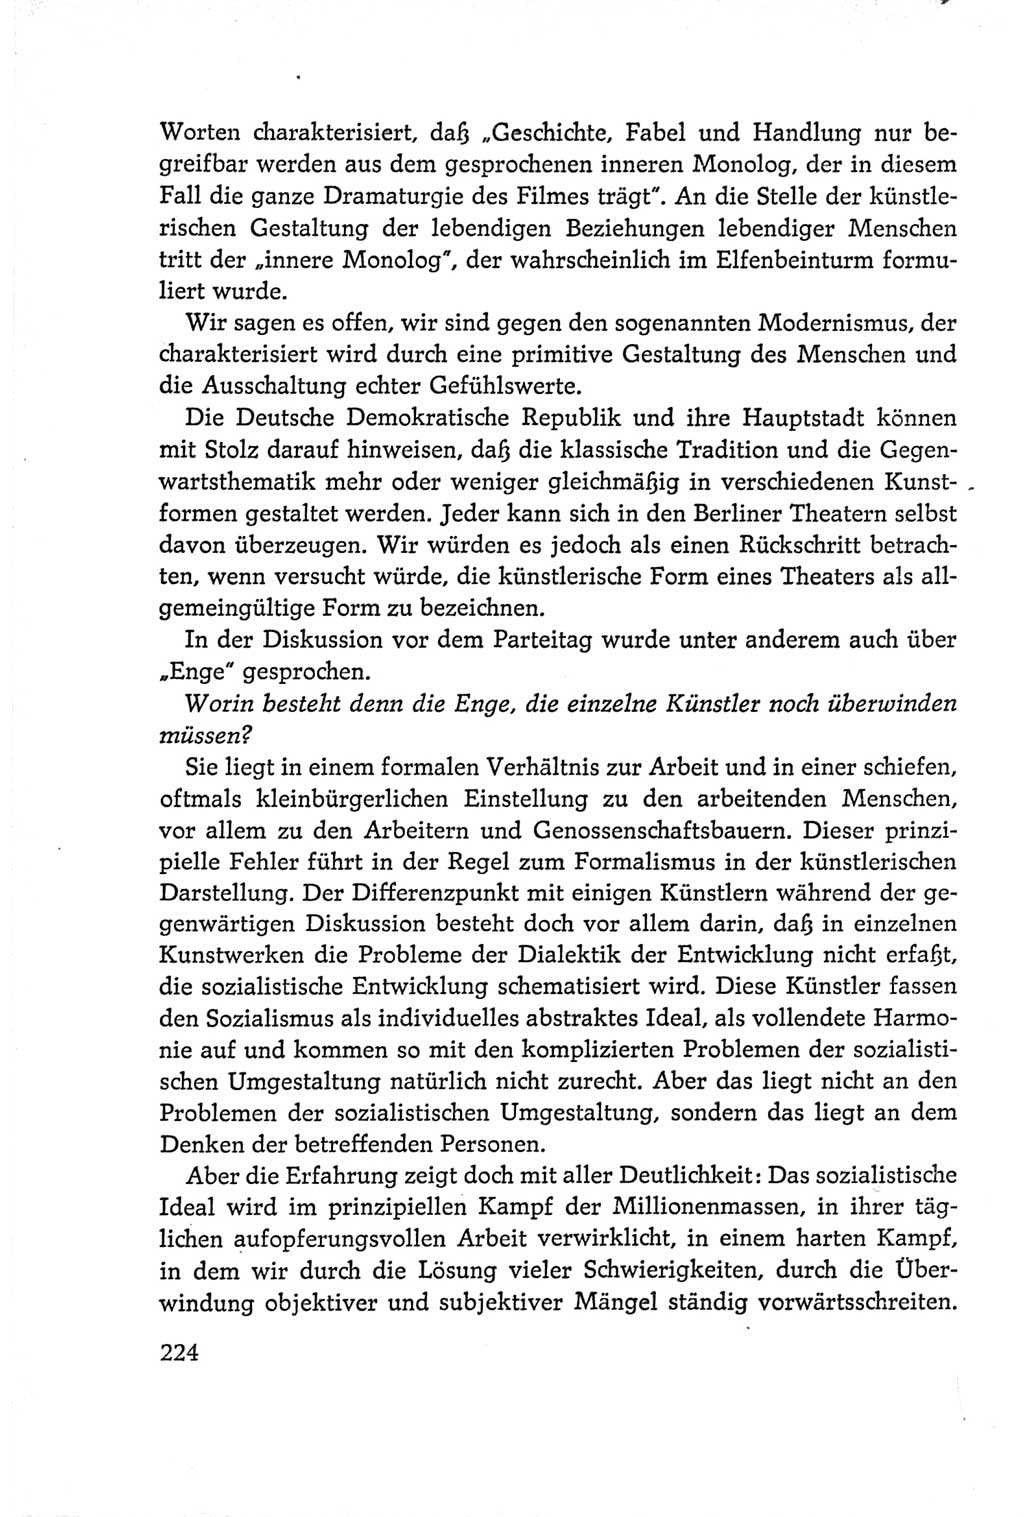 Protokoll der Verhandlungen des Ⅵ. Parteitages der Sozialistischen Einheitspartei Deutschlands (SED) [Deutsche Demokratische Republik (DDR)] 1963, Band Ⅰ, Seite 224 (Prot. Verh. Ⅵ. PT SED DDR 1963, Bd. Ⅰ, S. 224)